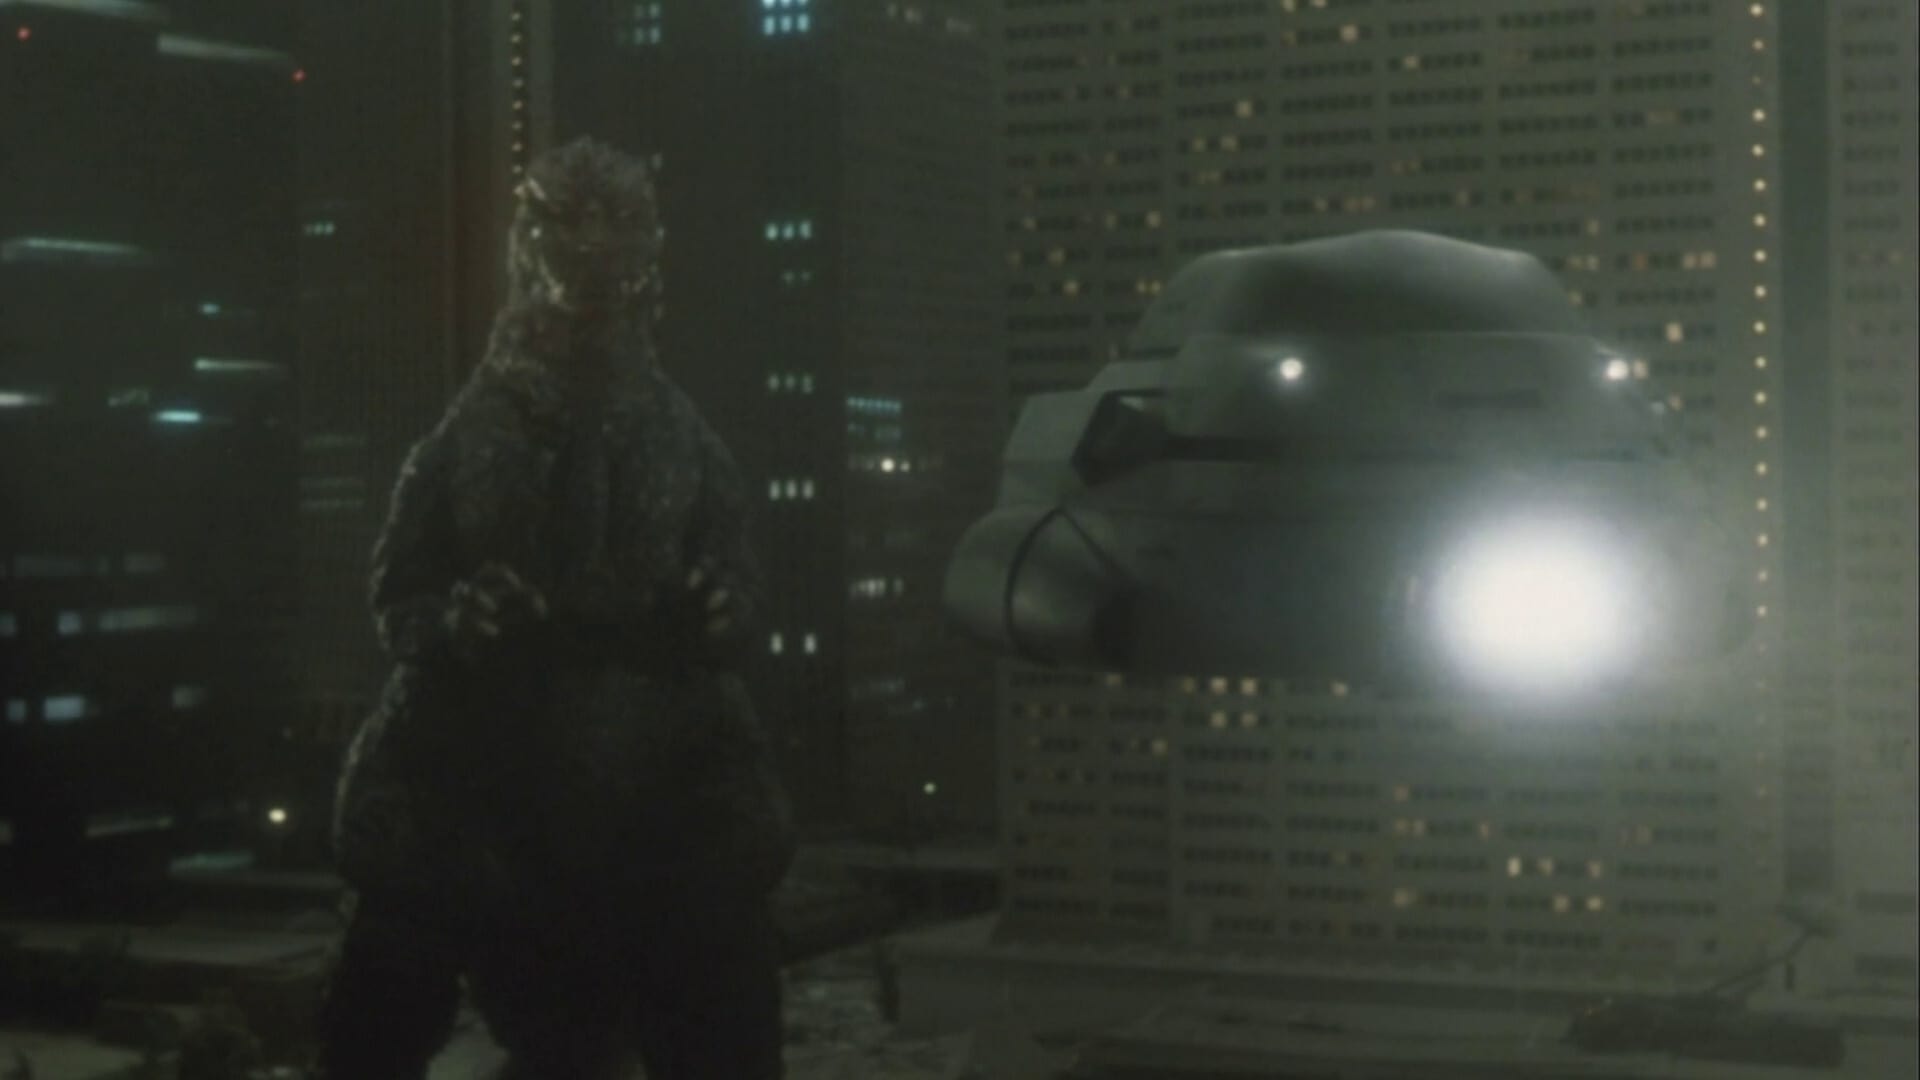 Godzilla - Die Rückkehr des Monsters (1985)